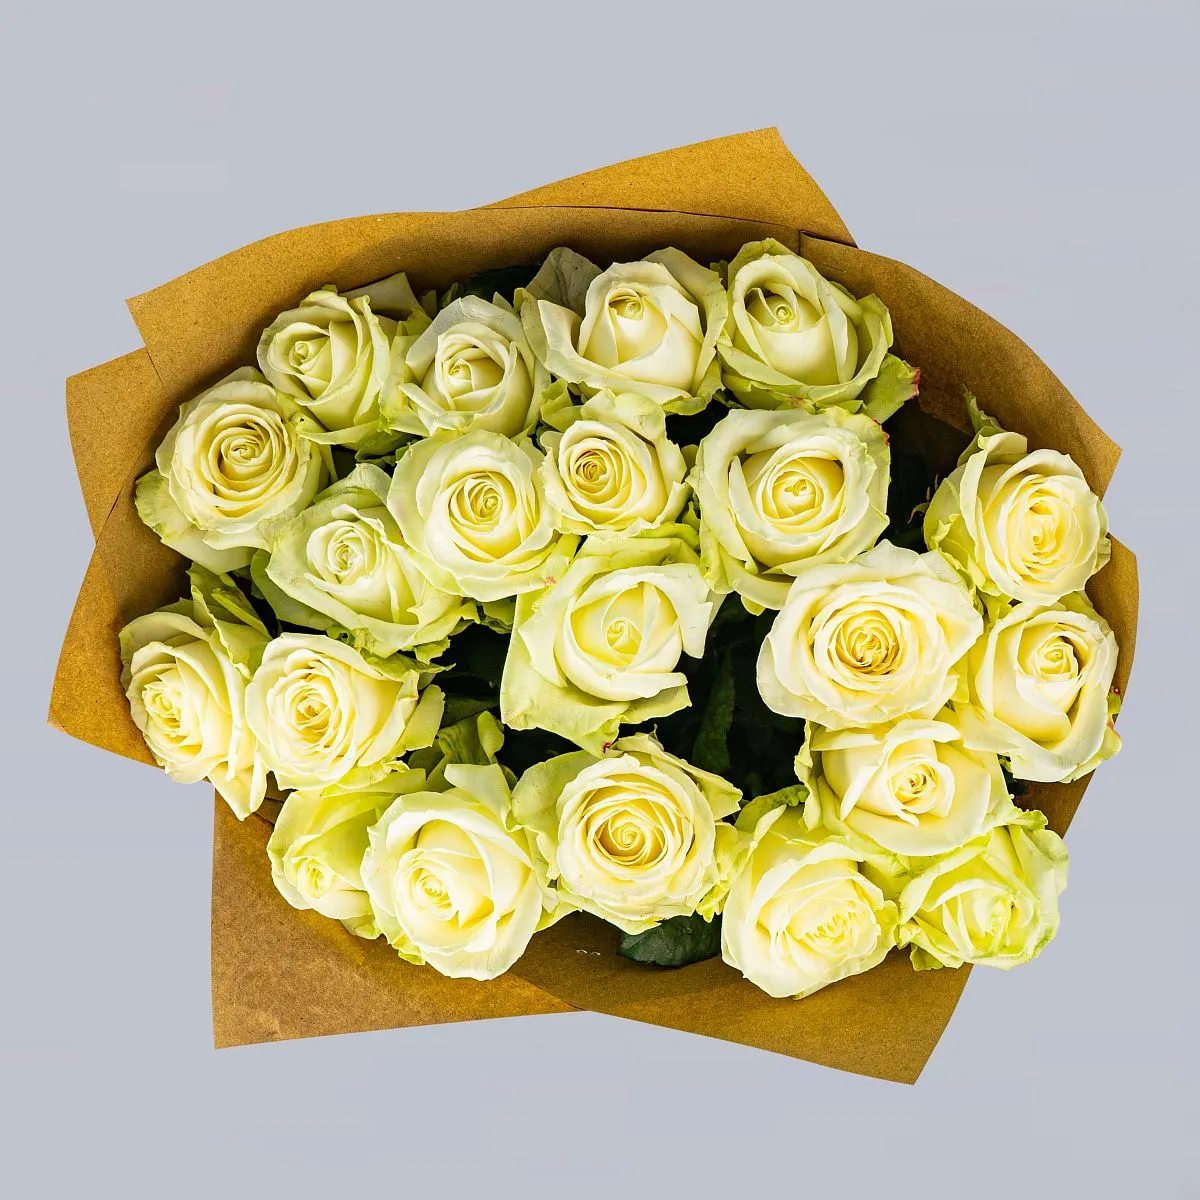 17 бело-зеленых роз (60 см)